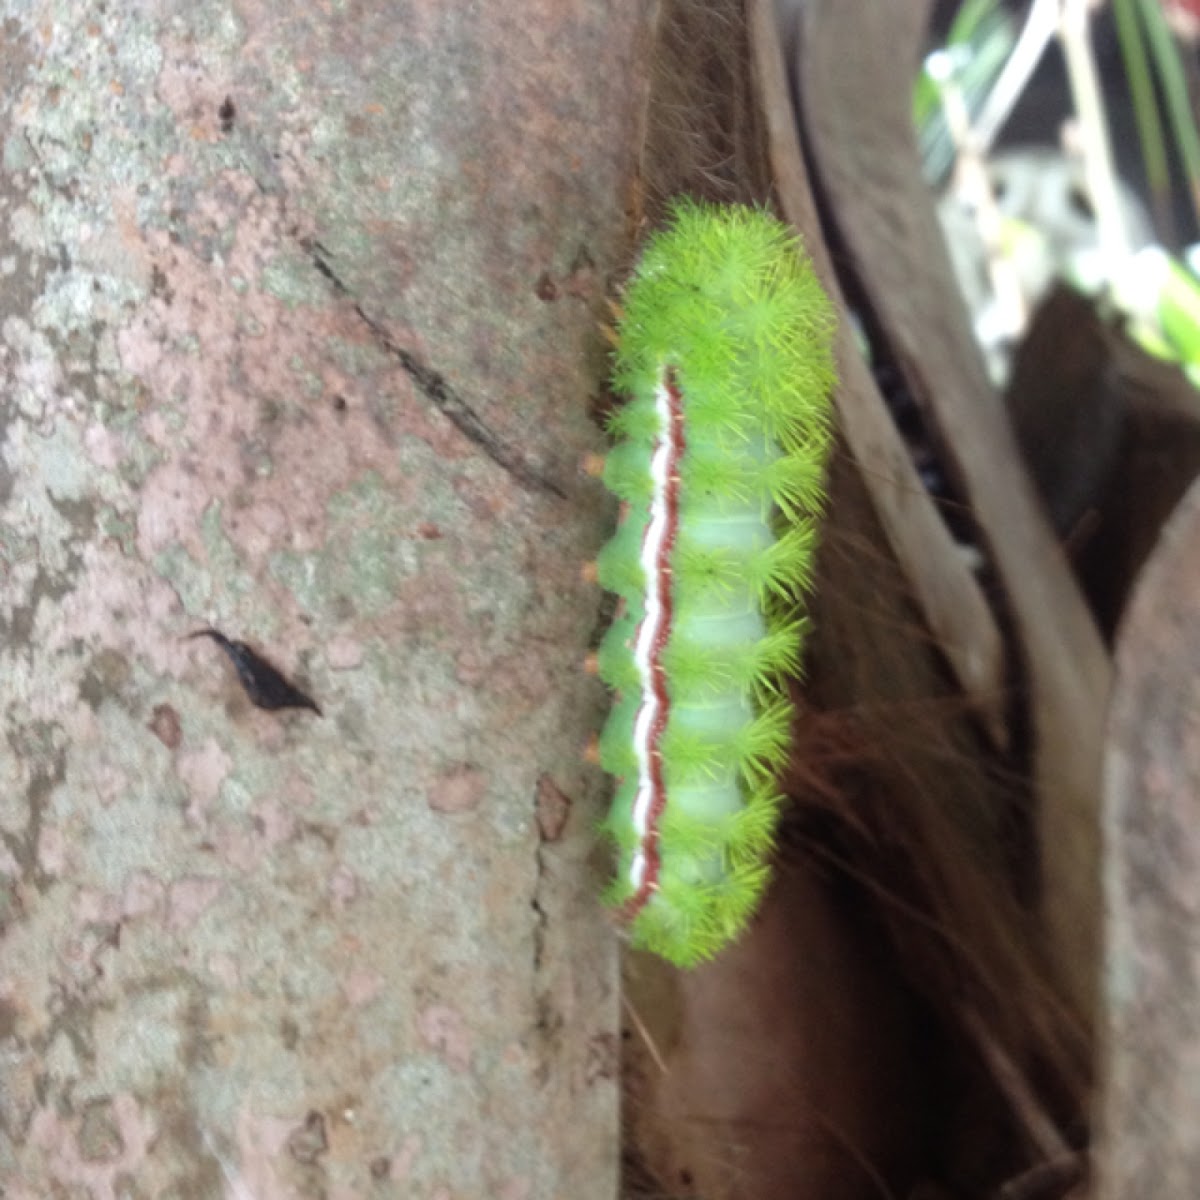 Io caterpillar